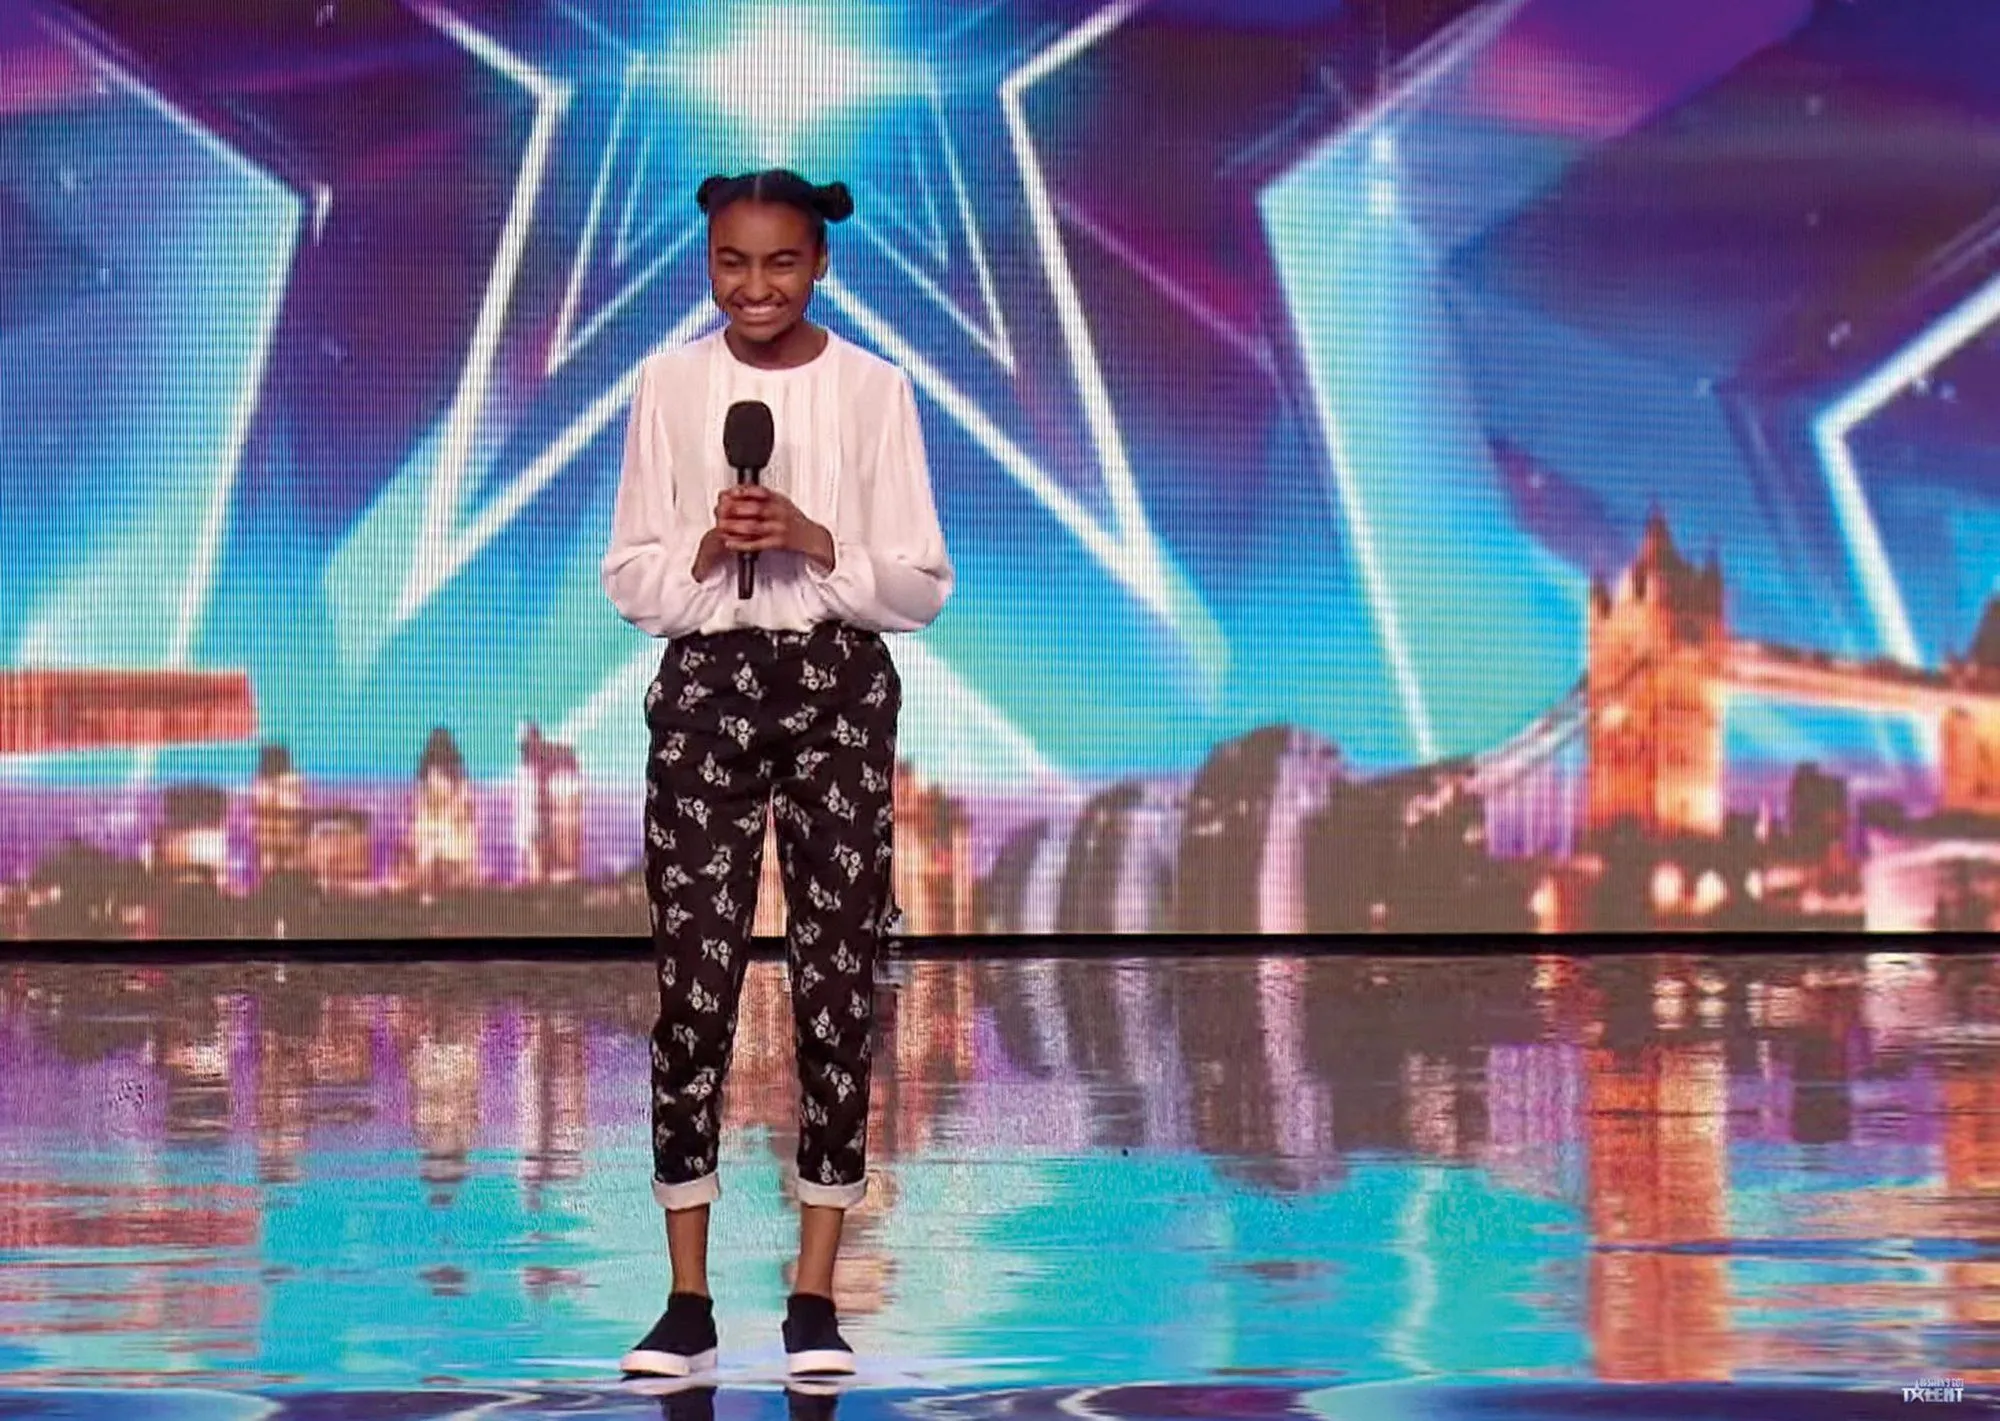 Image de l'émission Britain's Got Talent. Une jeune fille se tient debout sur une scène avec un micro à la main.